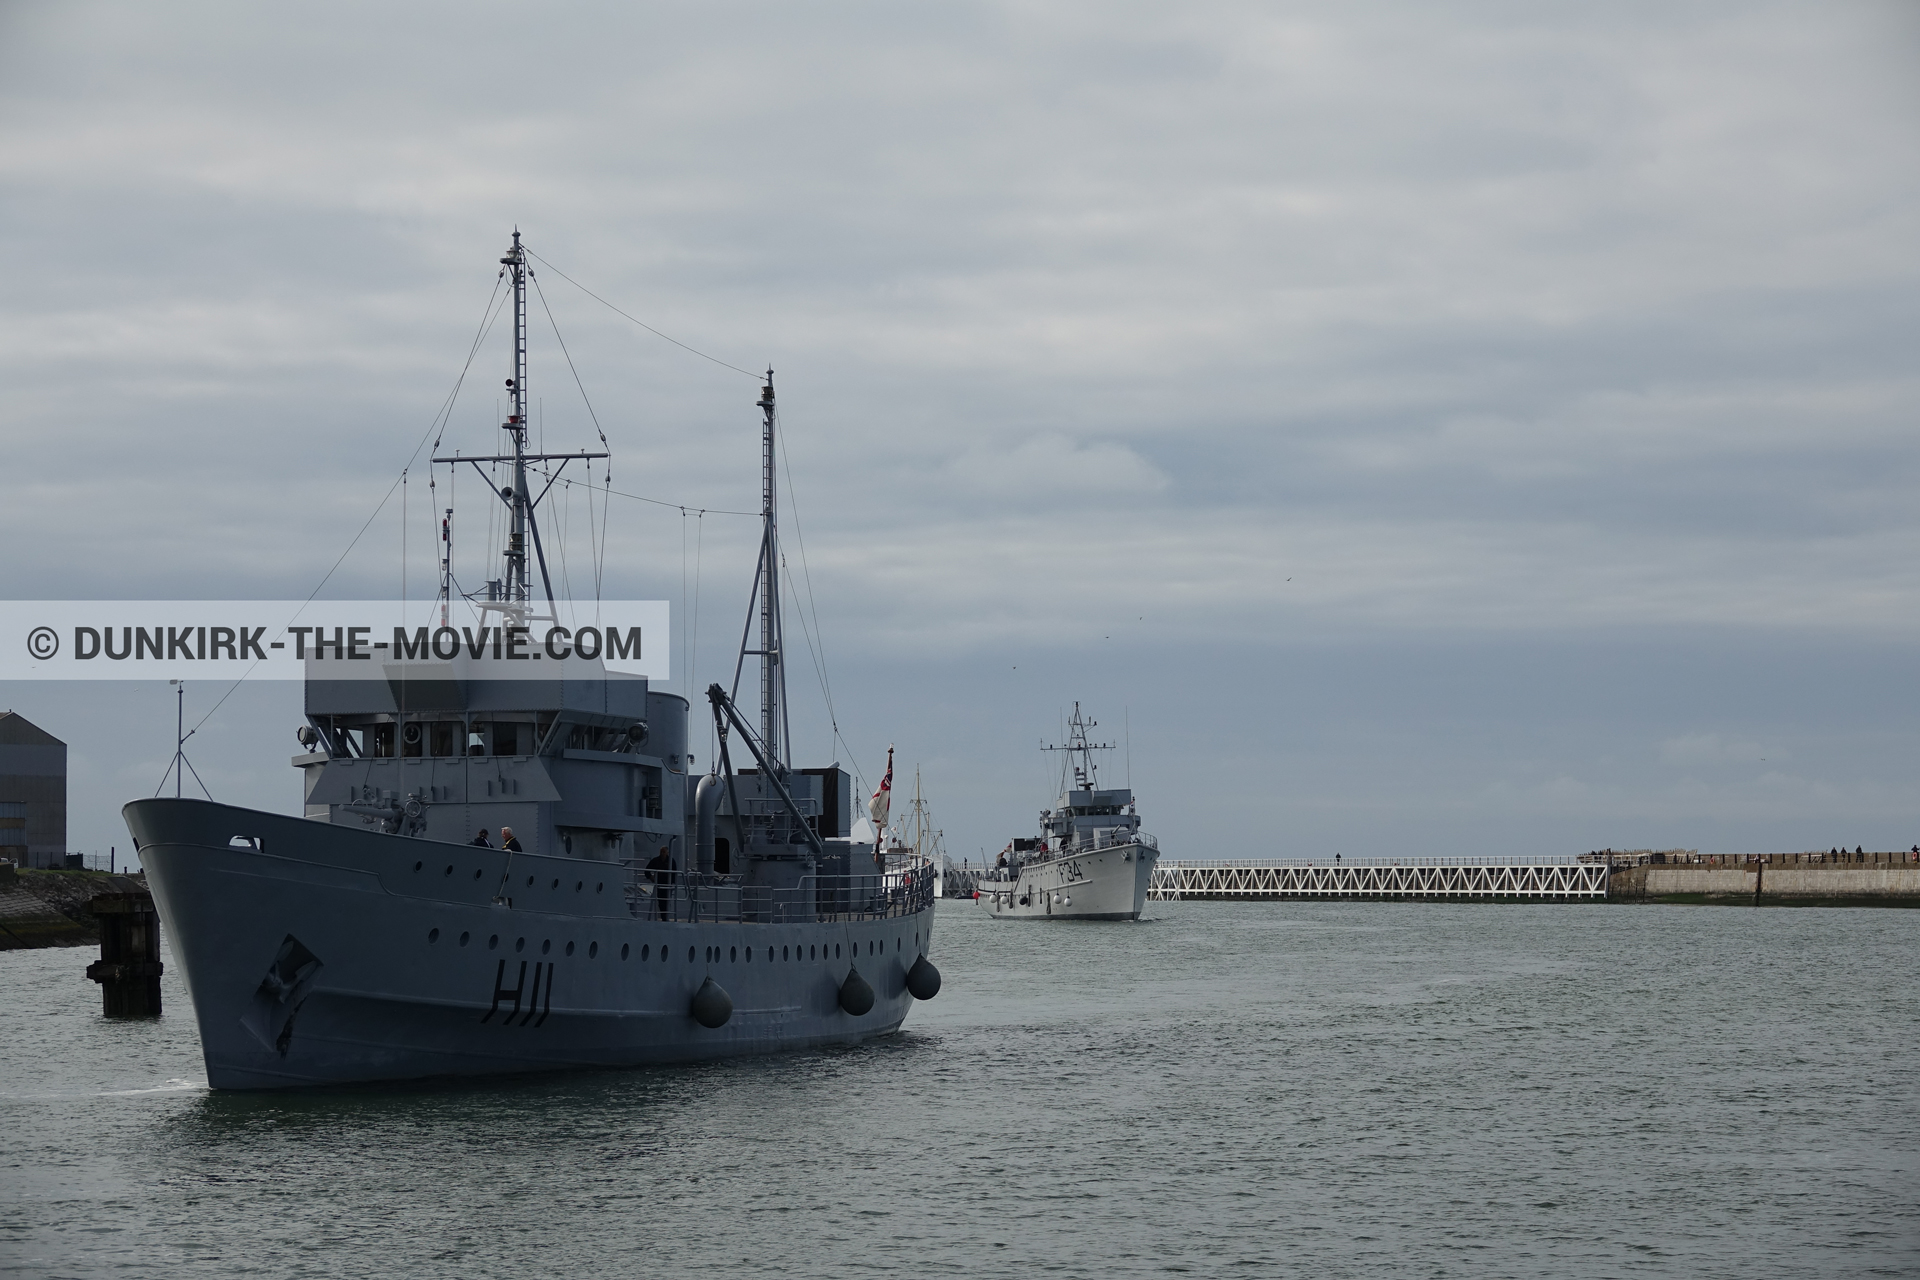 Fotos con cielo nublado, F34 - Hr.Ms. Sittard, H11 - MLV Castor, muelle del ESTE, mares calma,  durante el rodaje de la película Dunkerque de Nolan